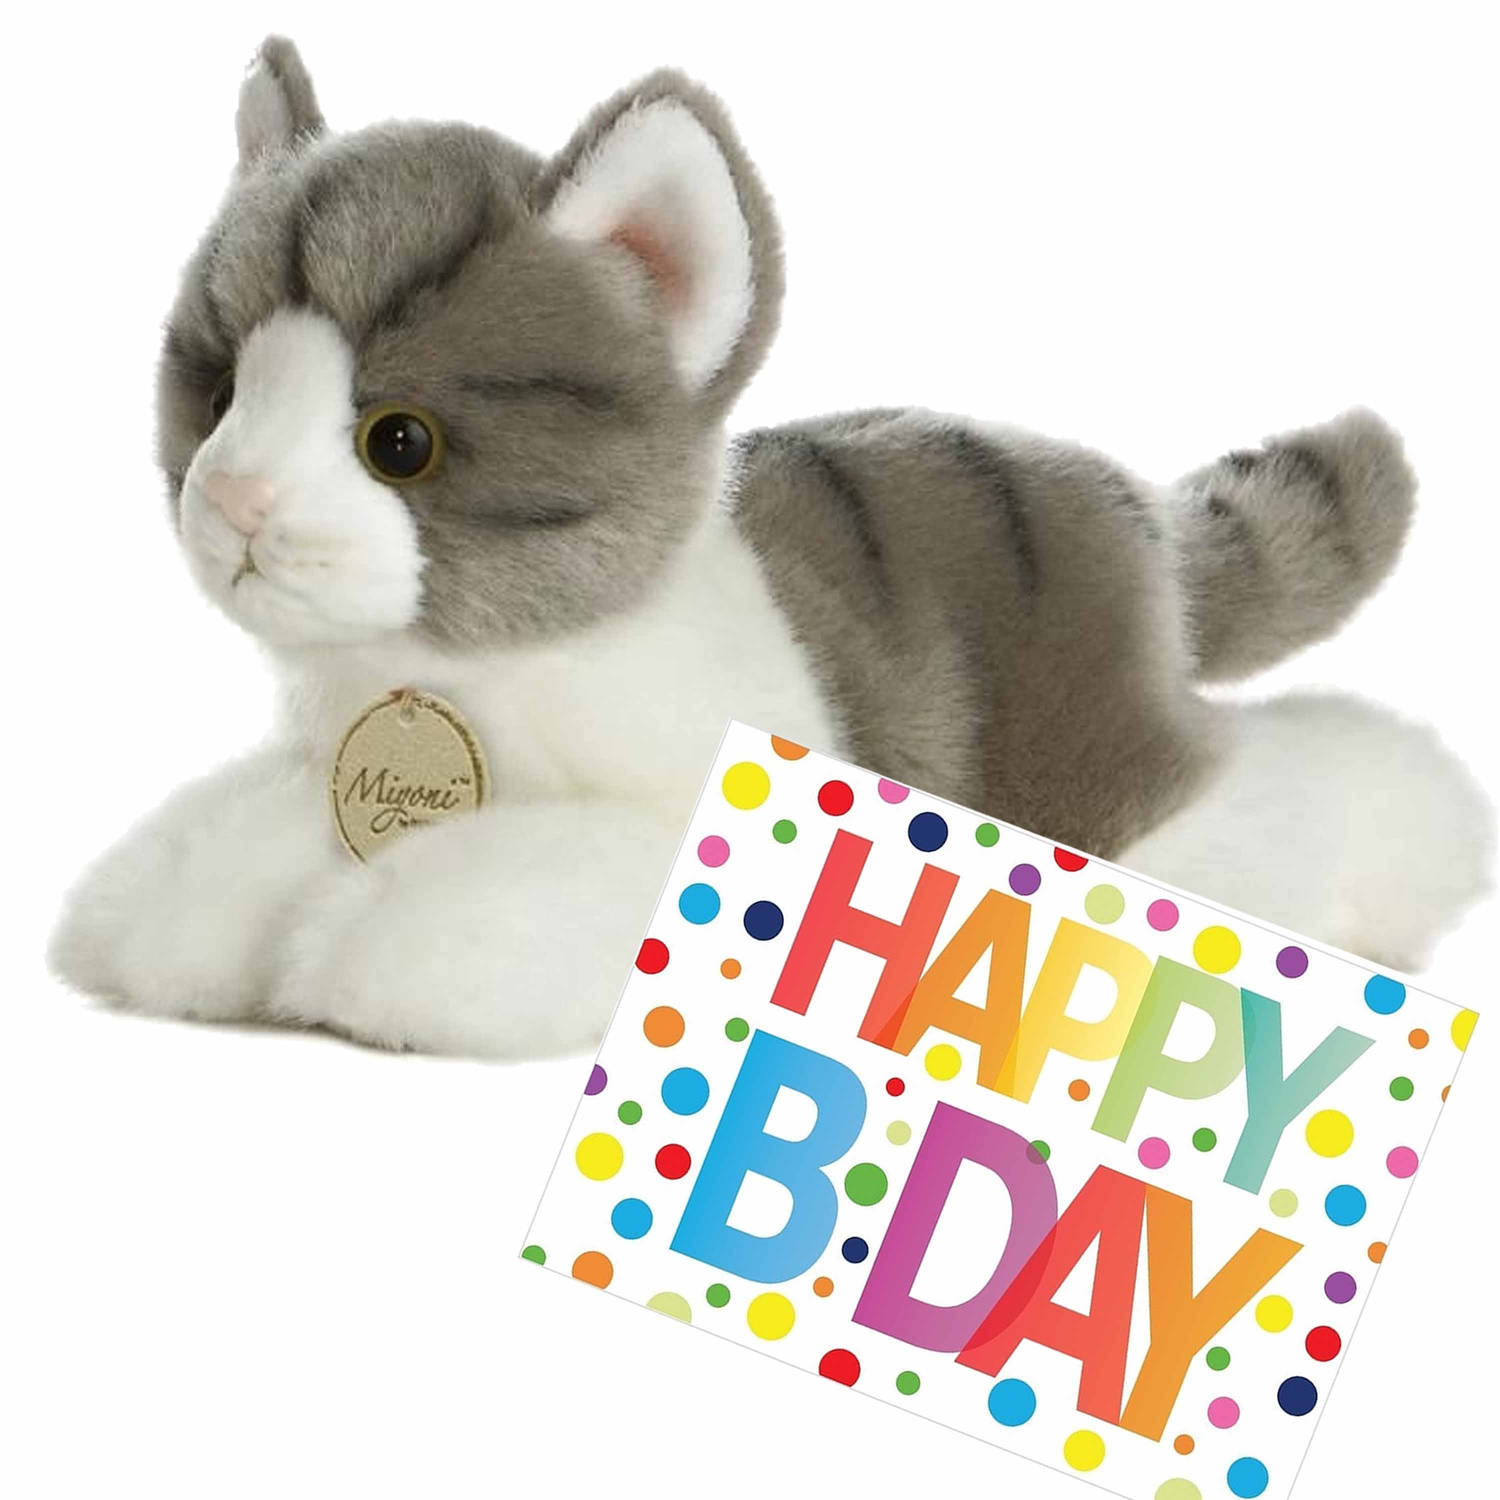 Pluche knuffel kat-poes grijs-witte 20 cm met A5-size Happy Birthday wenskaart Knuffel huisdieren